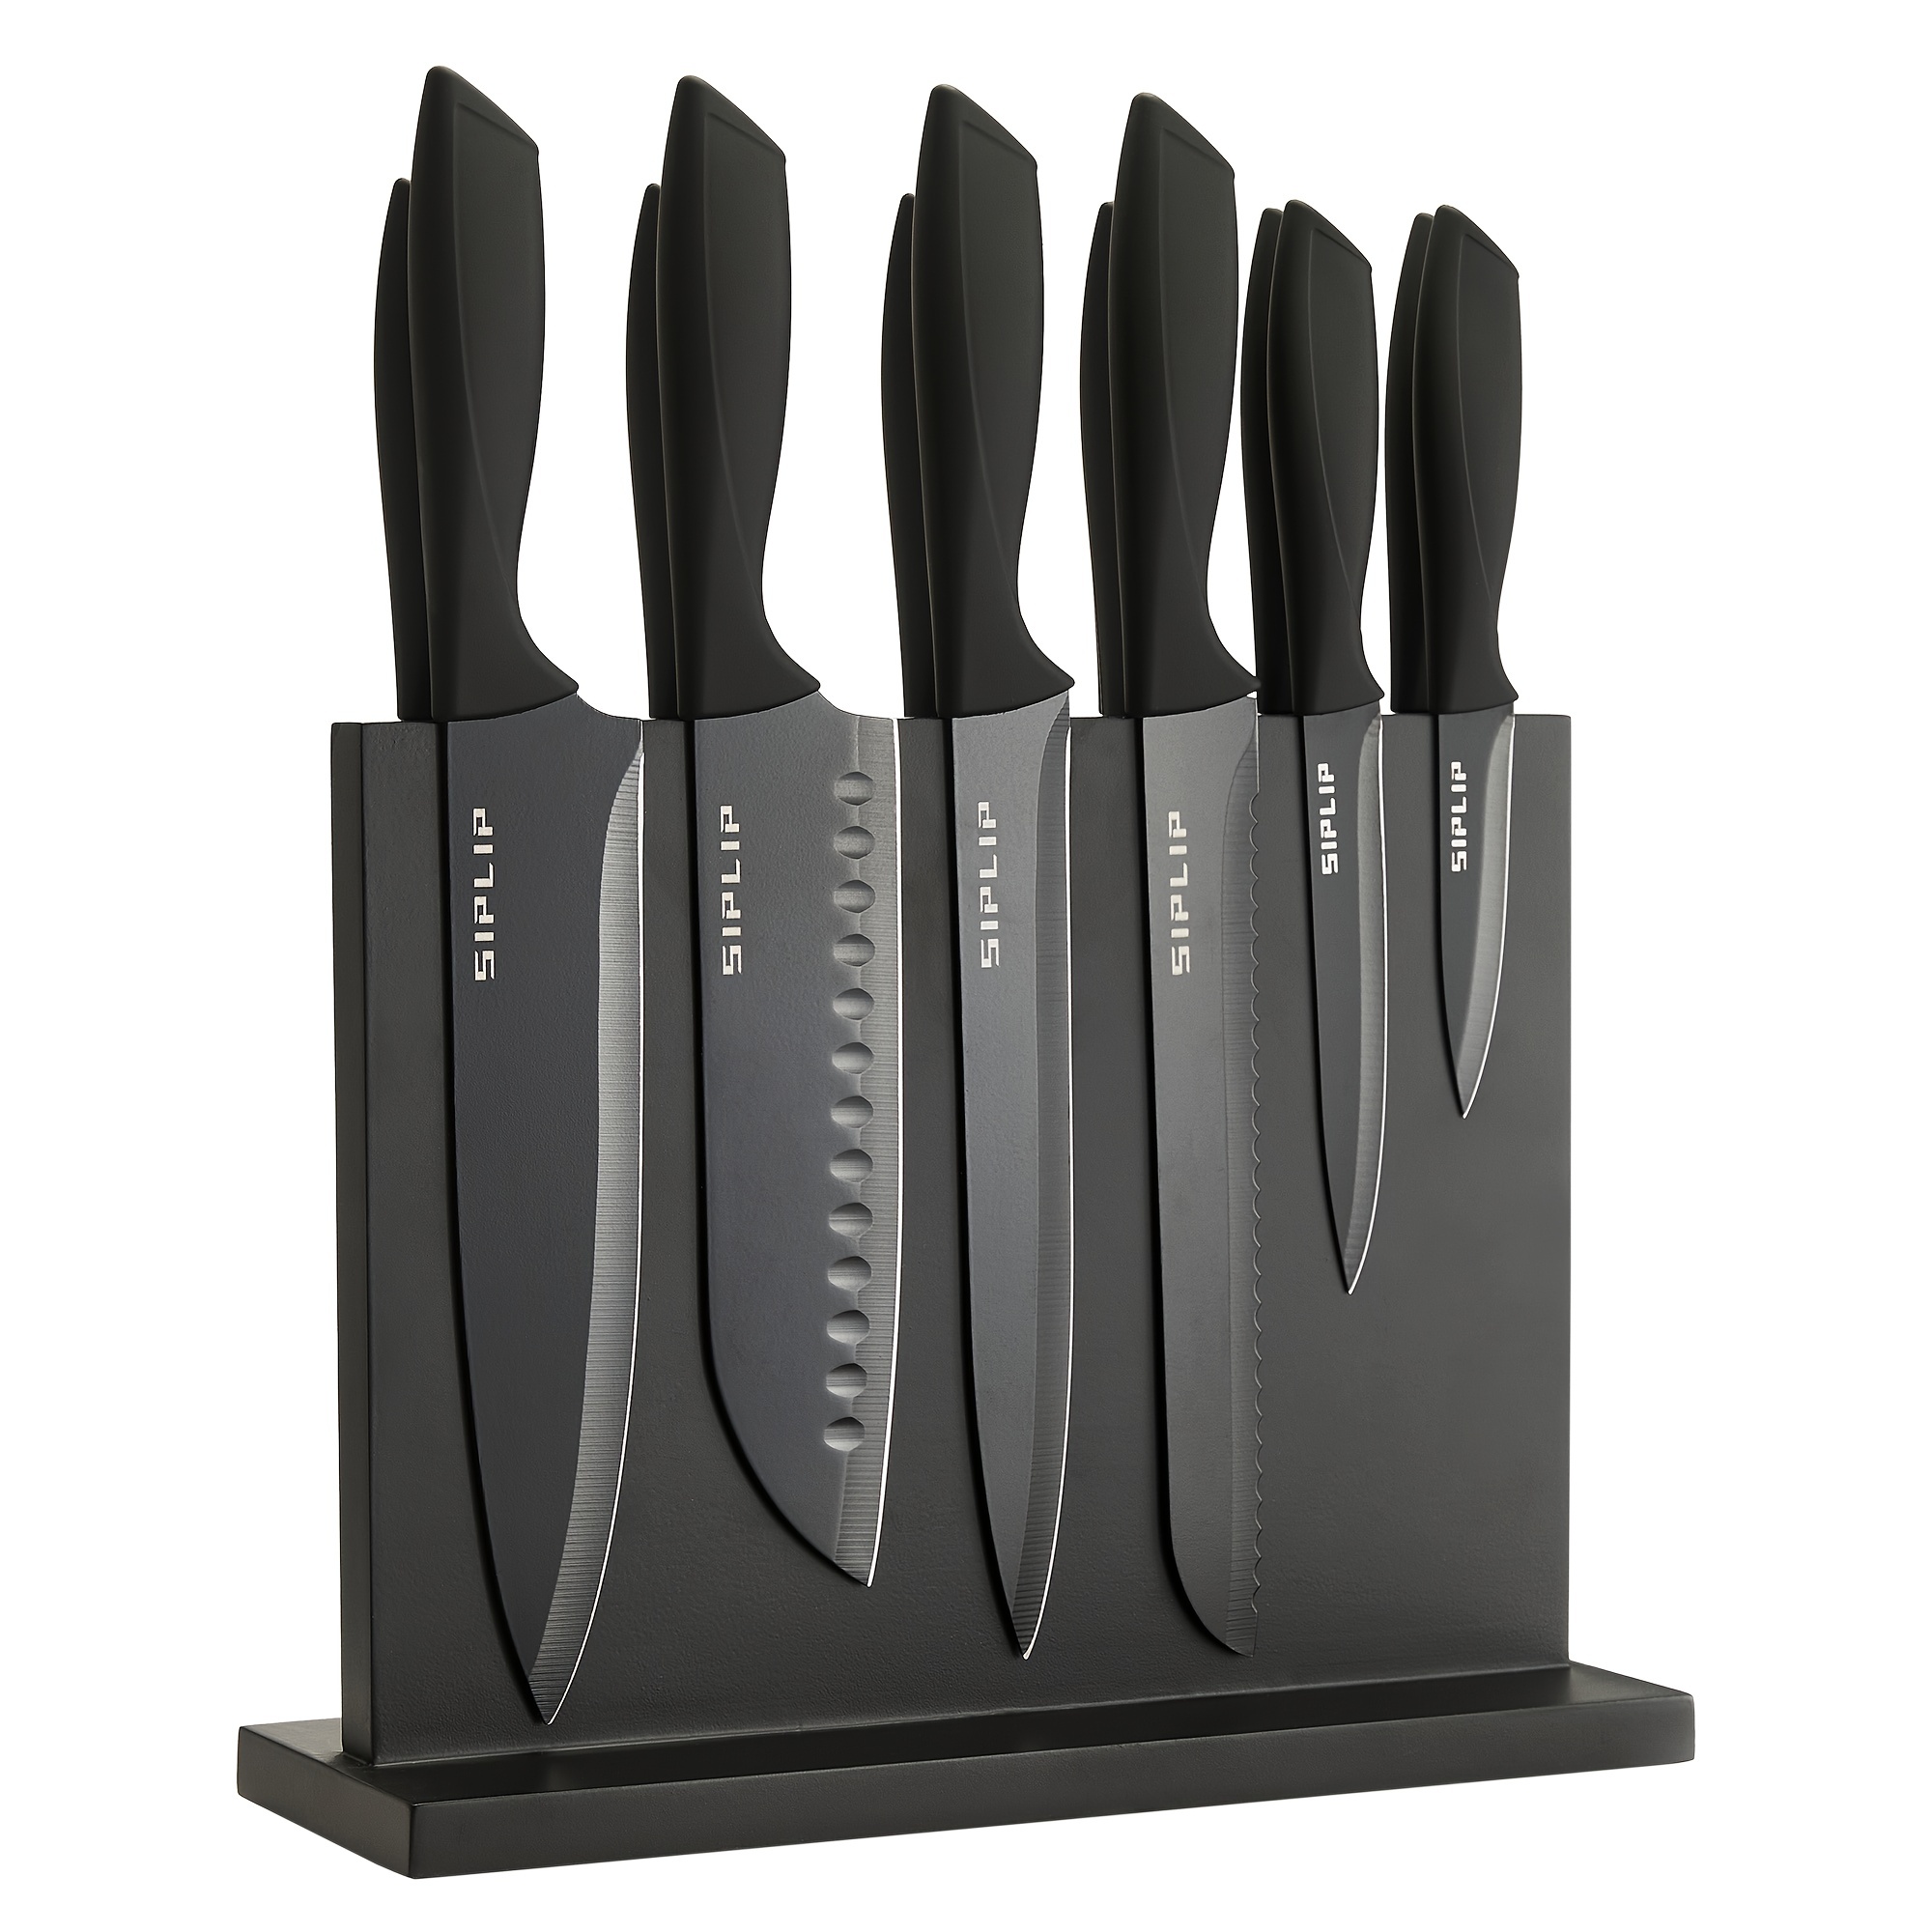 

Kitchen Knife Set With Knife Holder, 15 Pieces High Carbon Stainless Steel Sharp Kitchen Knife Set Including Chef's Knife, Bread Knife, Serrated Steak Knife Set, Knife Sharpener